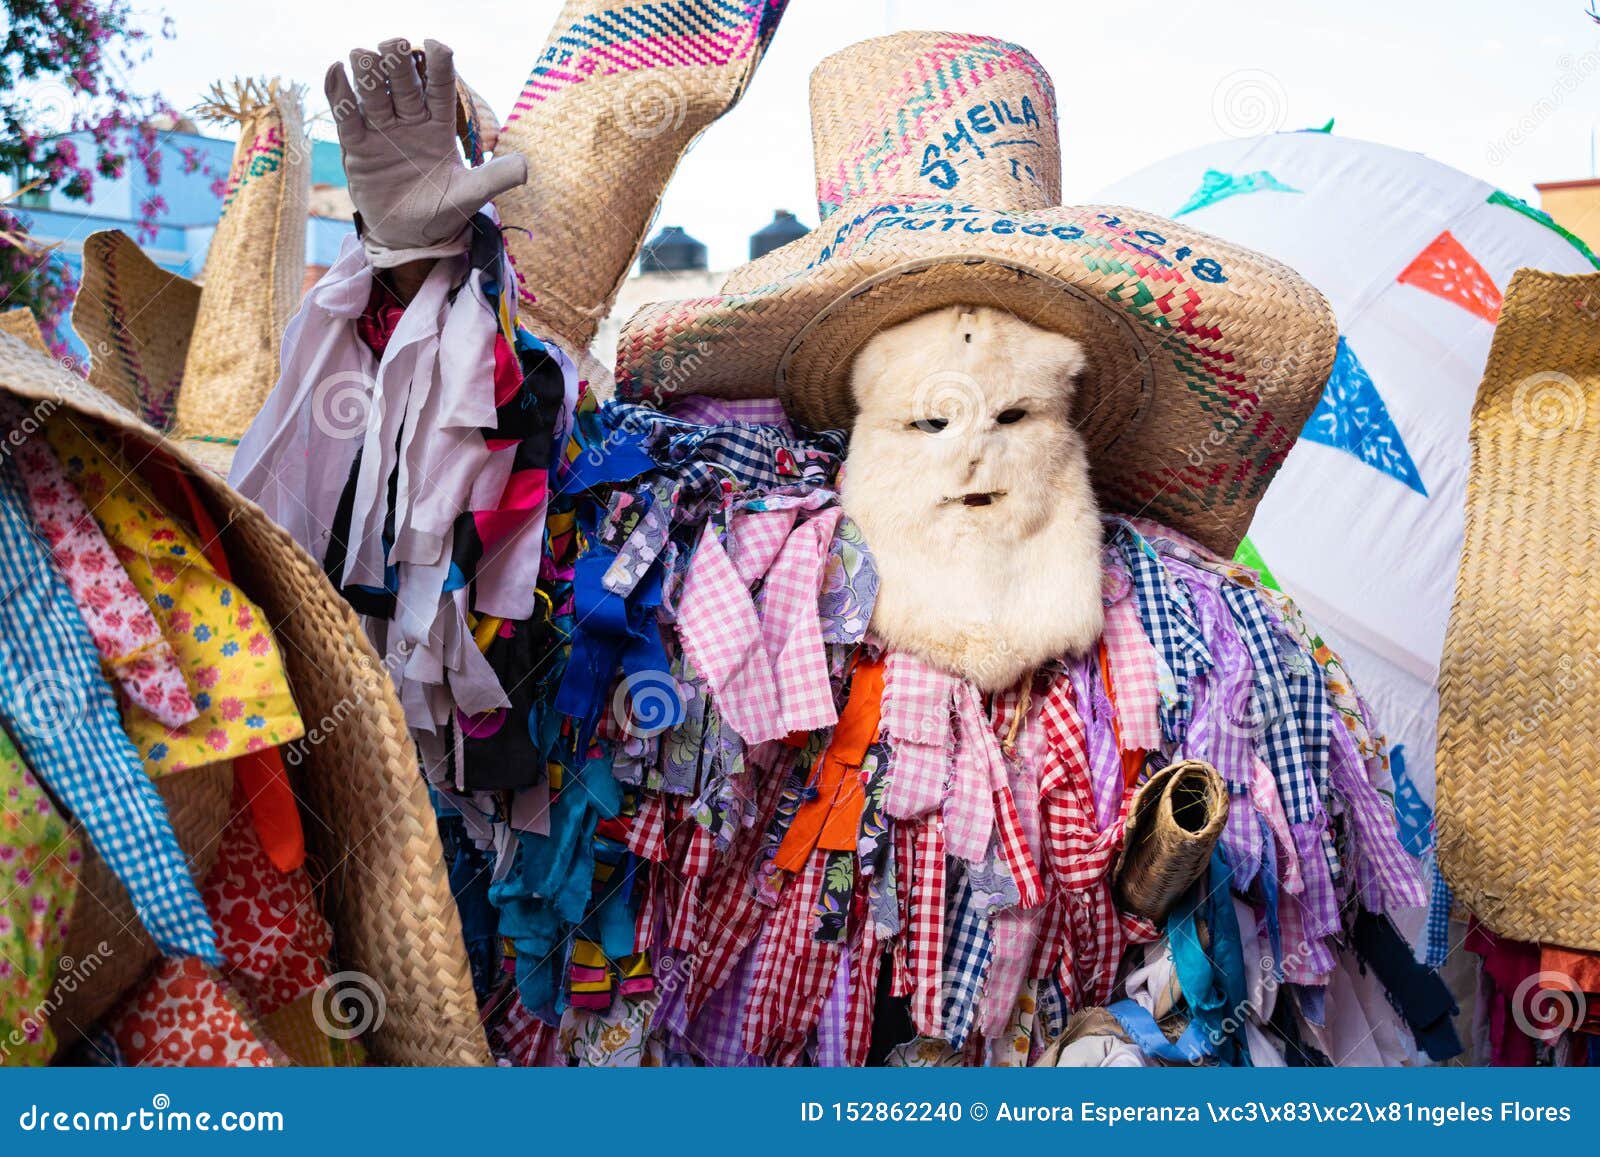 Homme habillé avec les vêtements traditionnels. OAXACA, OAXACA, MEXIQUE 6 JUILLET 2019 : L'homme habillé comme tiliche, costume traditionnel de Putla, Oaxaca pendant le Convite, une partie faite pour invitent à une grande partie traditionnelle a appelé Guelaguetza à Oaxaca, Mexicon